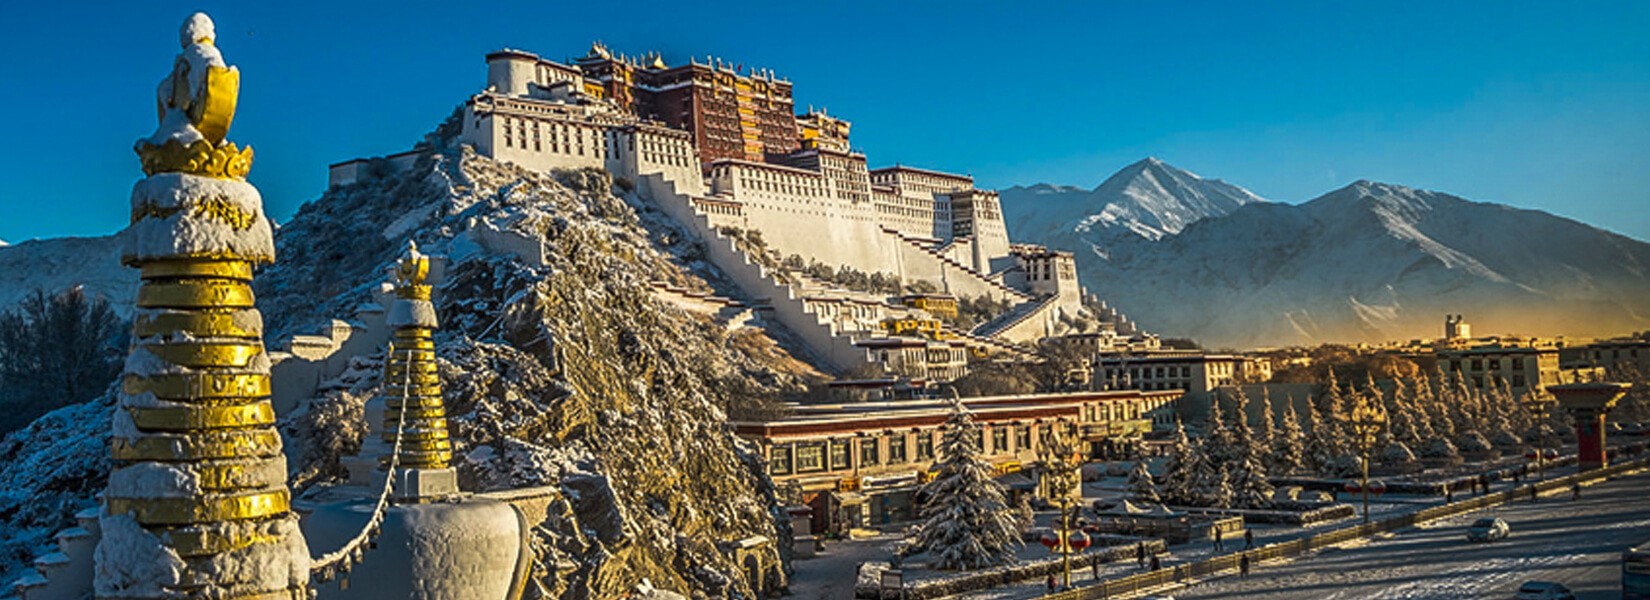 Tibet Lhasa tour